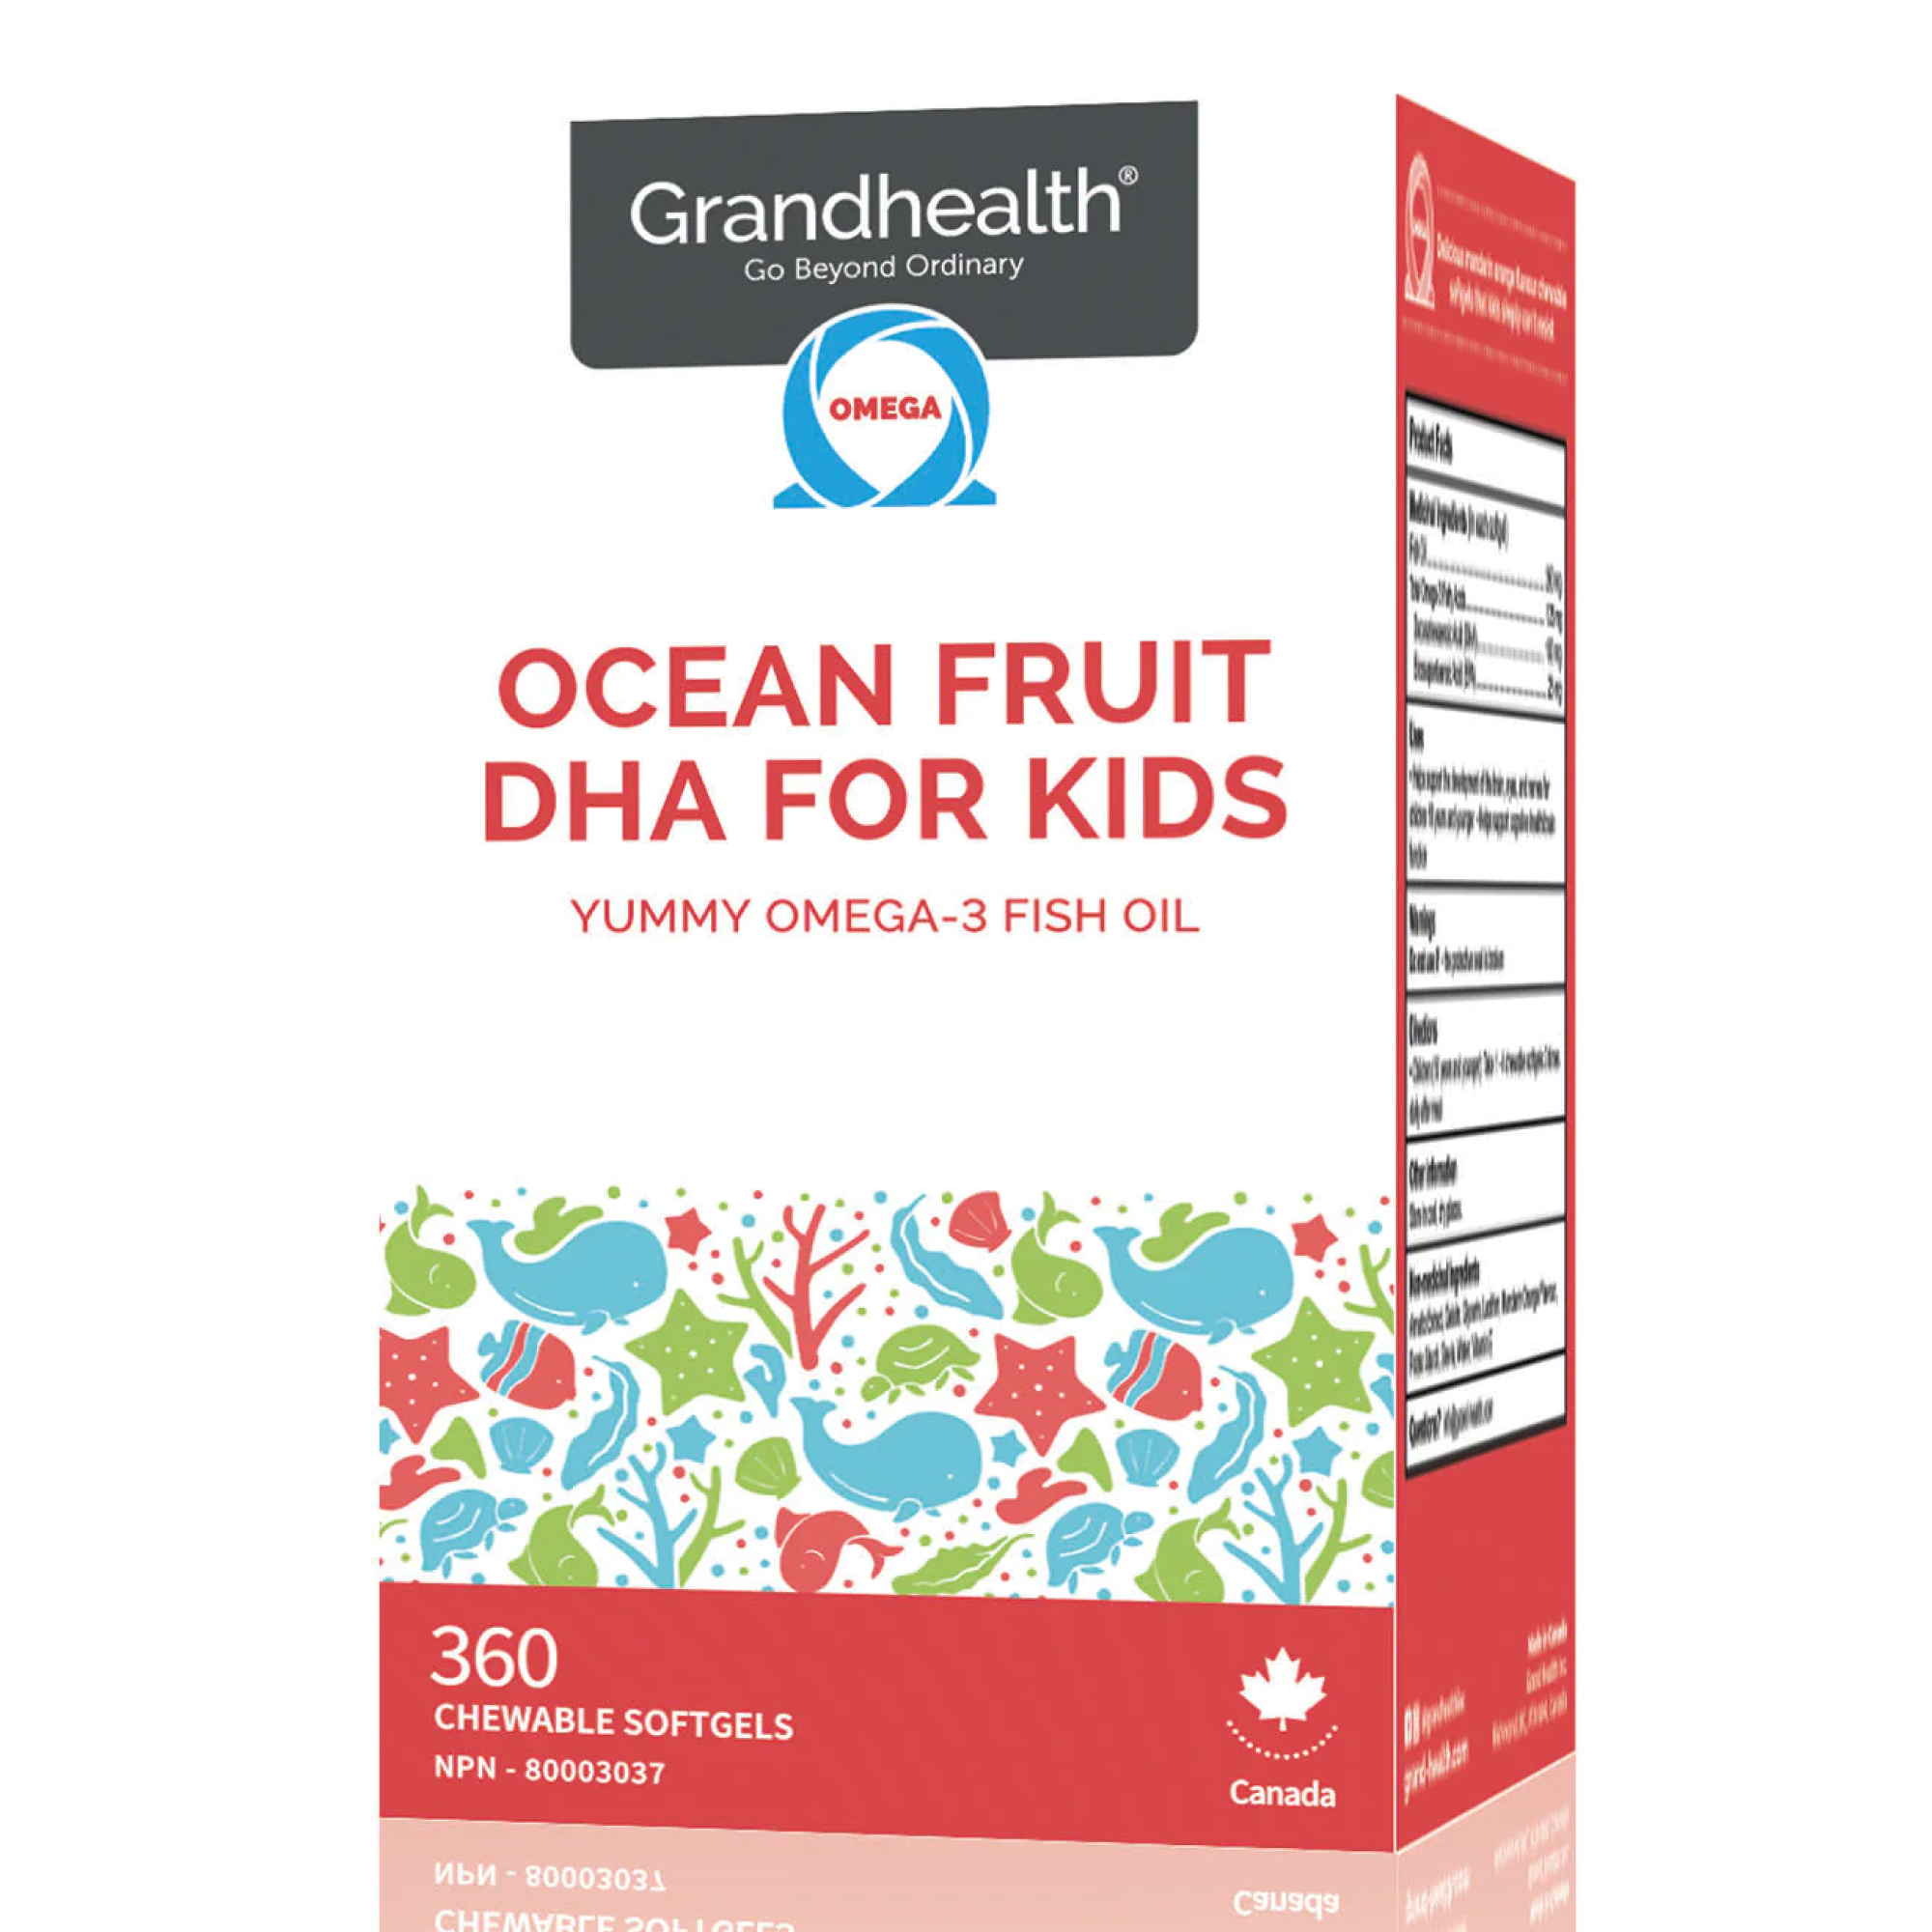 Ocean Fruit DHA for Kids